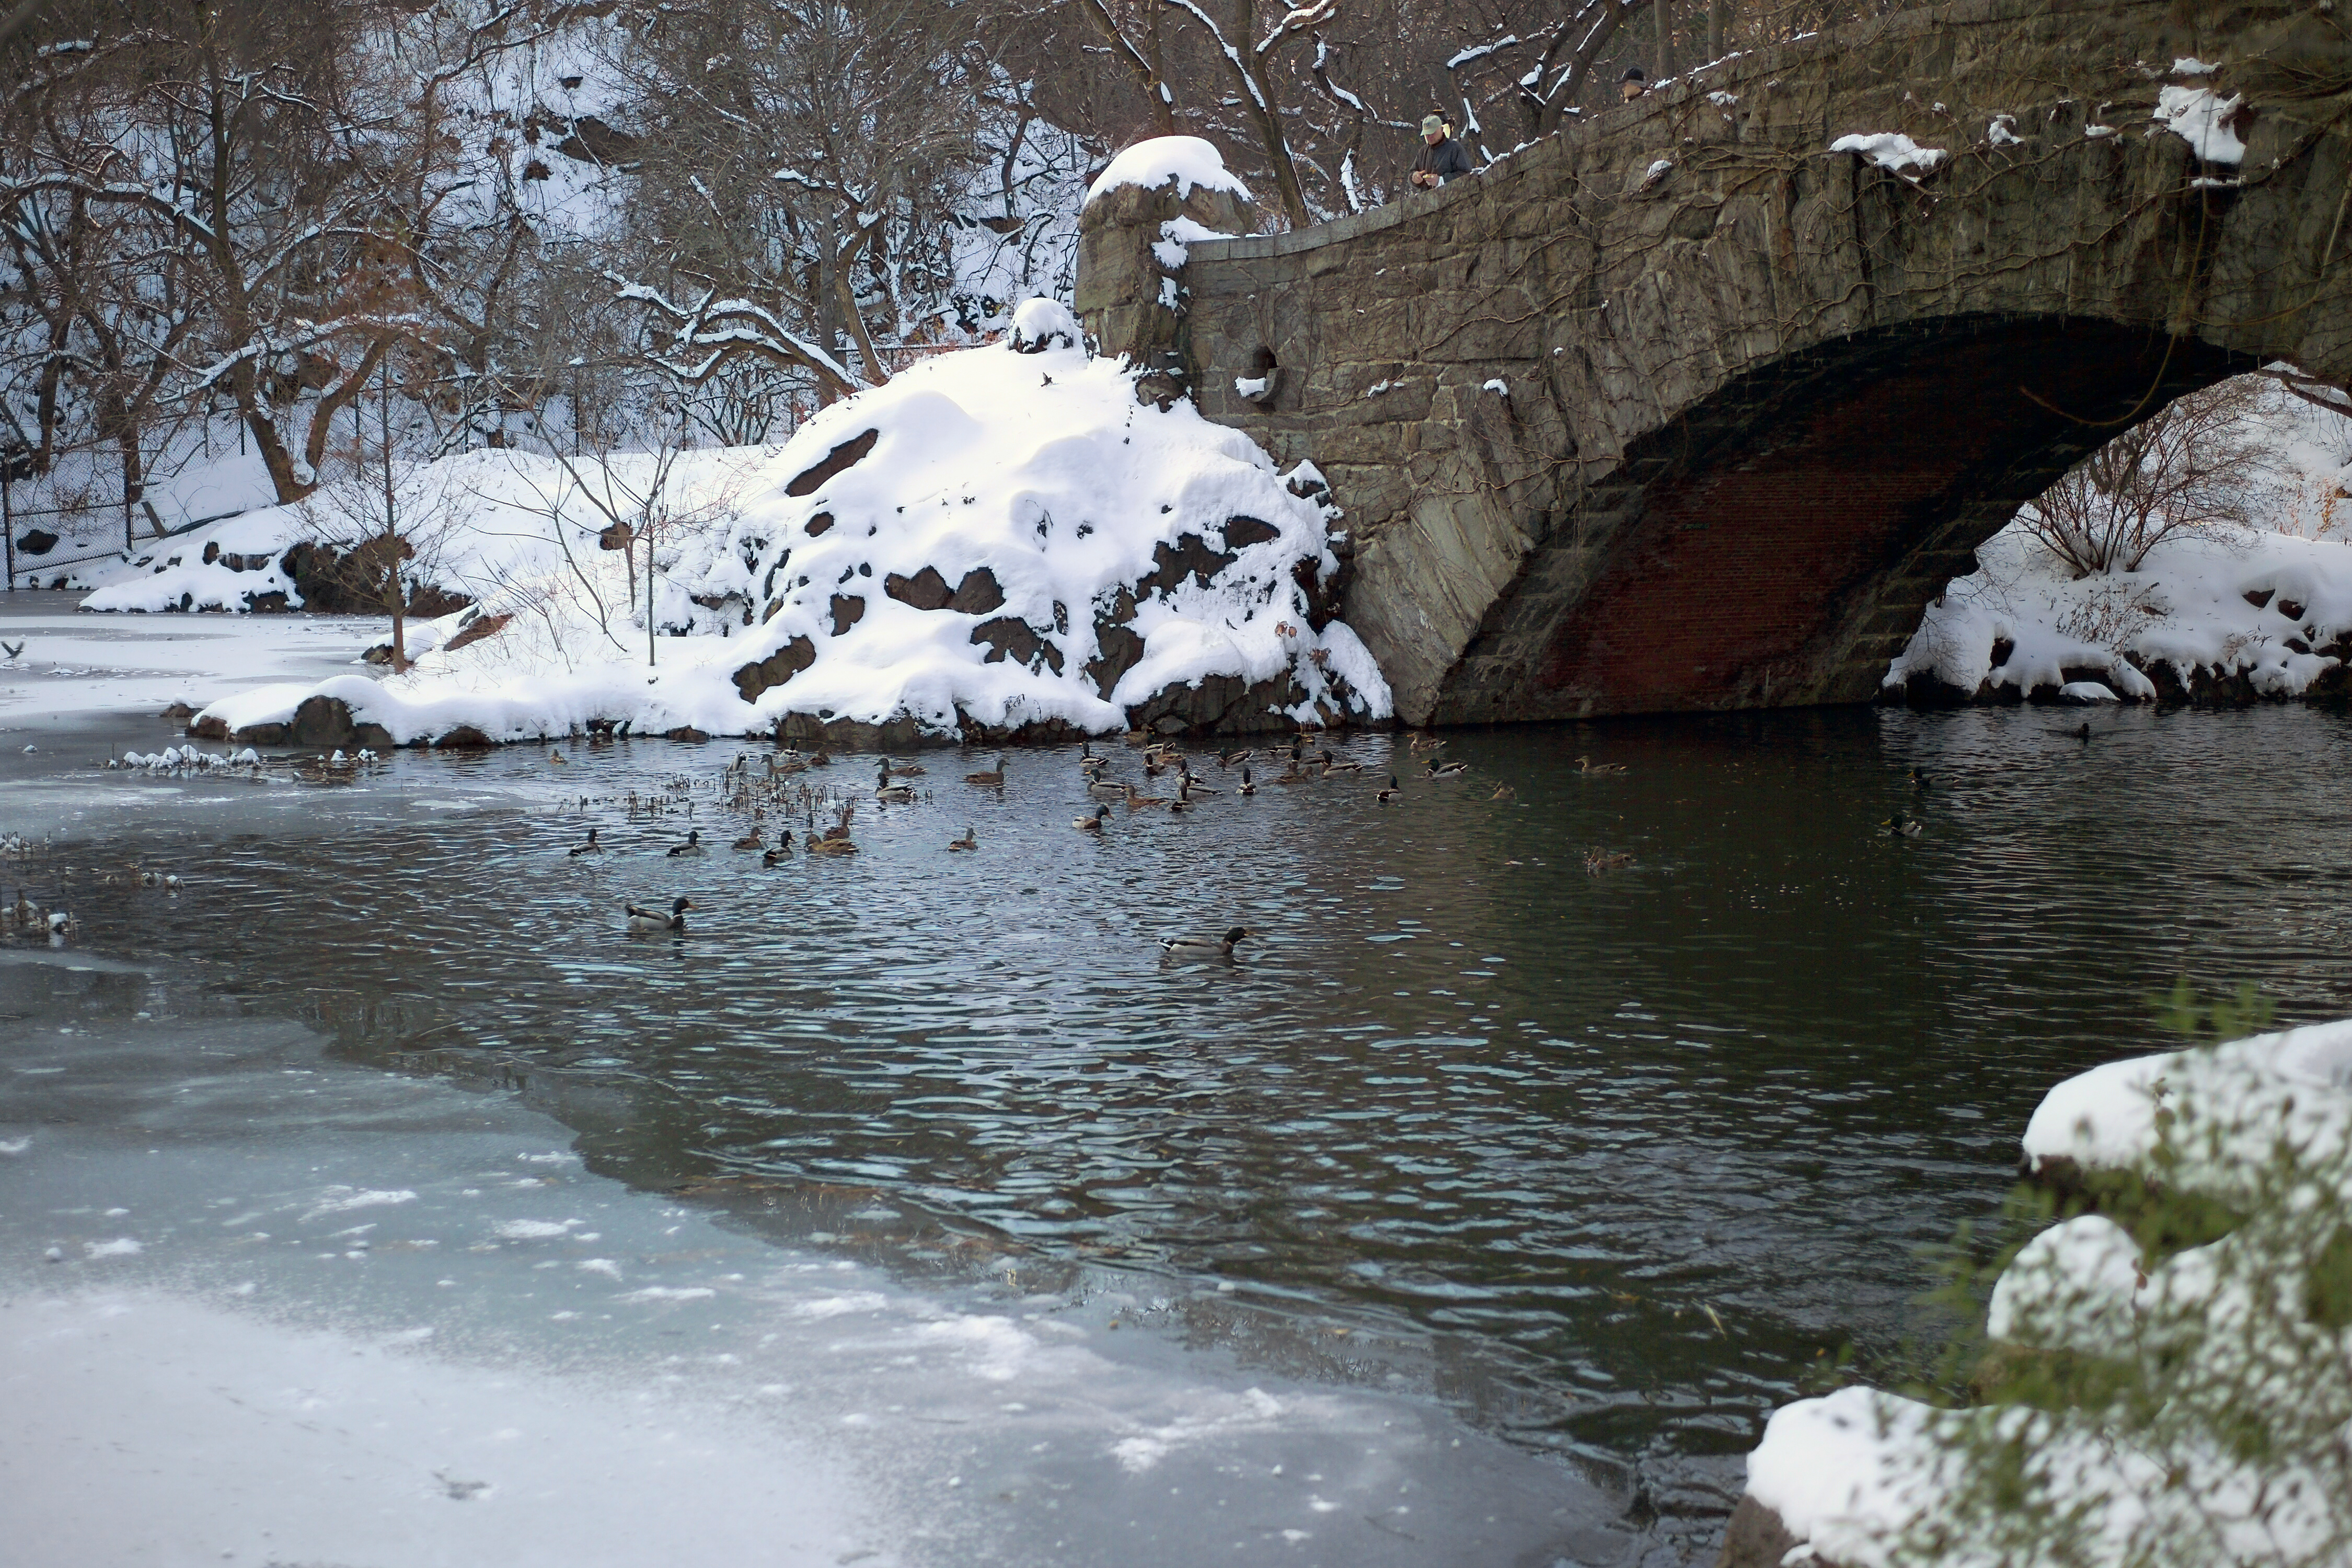 File:Central Park (New York) 12 Winter ducks.jpg - Wikimedia Commons